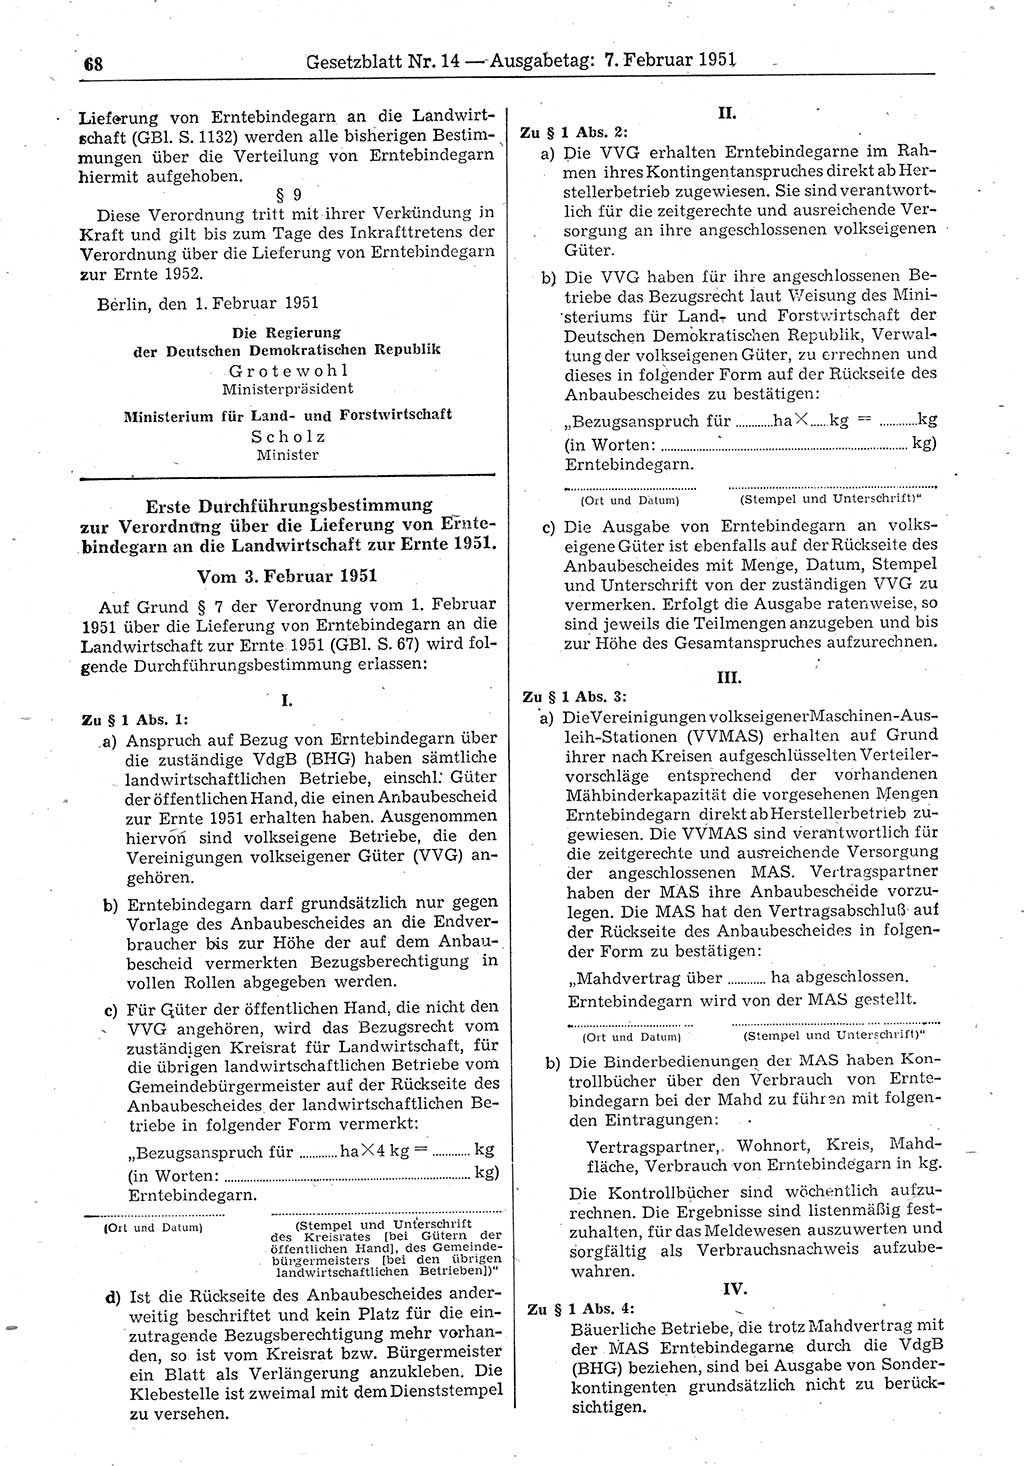 Gesetzblatt (GBl.) der Deutschen Demokratischen Republik (DDR) 1951, Seite 68 (GBl. DDR 1951, S. 68)